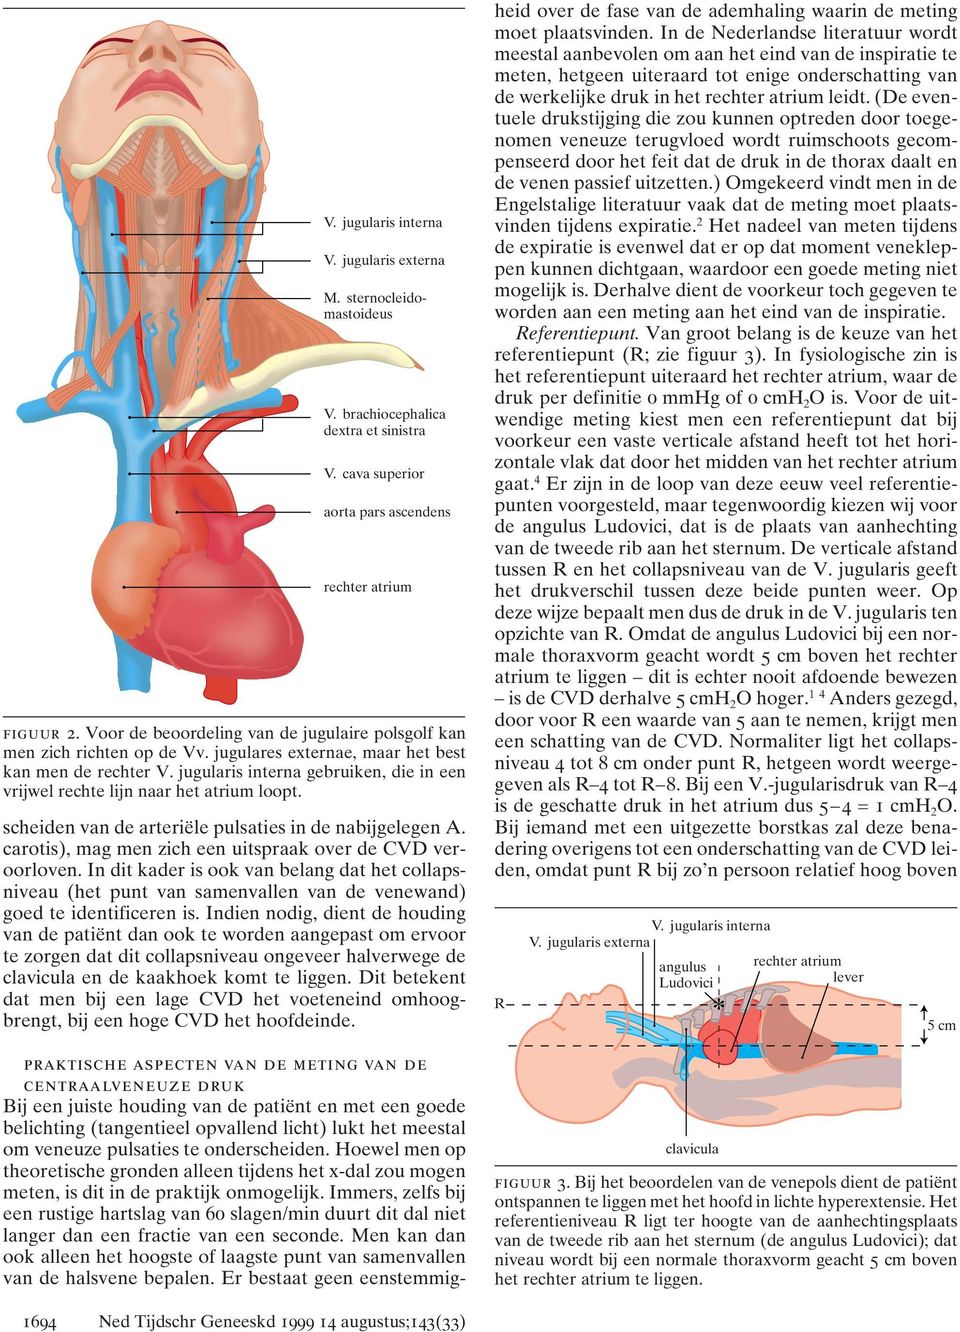 jugularis interna gebruiken, die in een vrijwel rechte lijn naar het atrium loopt. scheiden van de arteriële pulsaties in de nabijgelegen A.